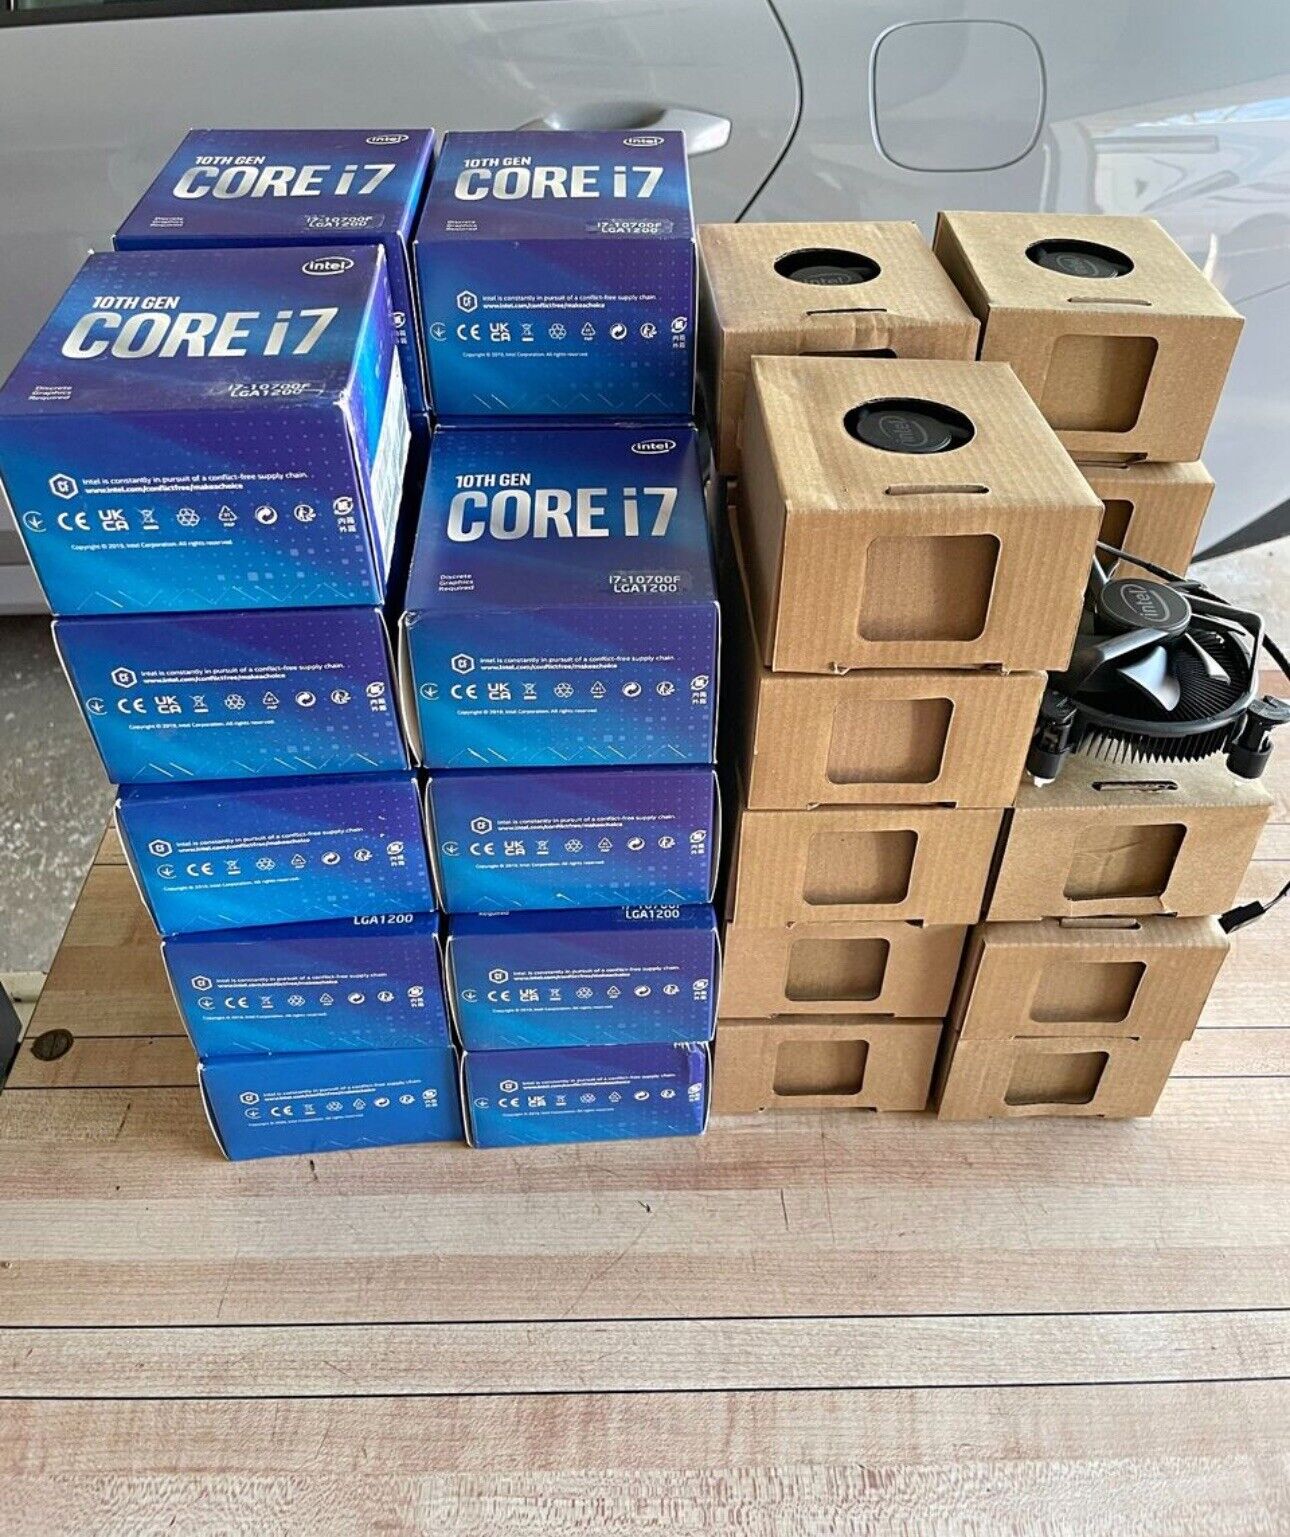 ( LOT OF 38) K69237-001 Intel CPU Cooler for LGA 1200 / LGA 1151 Copper Core